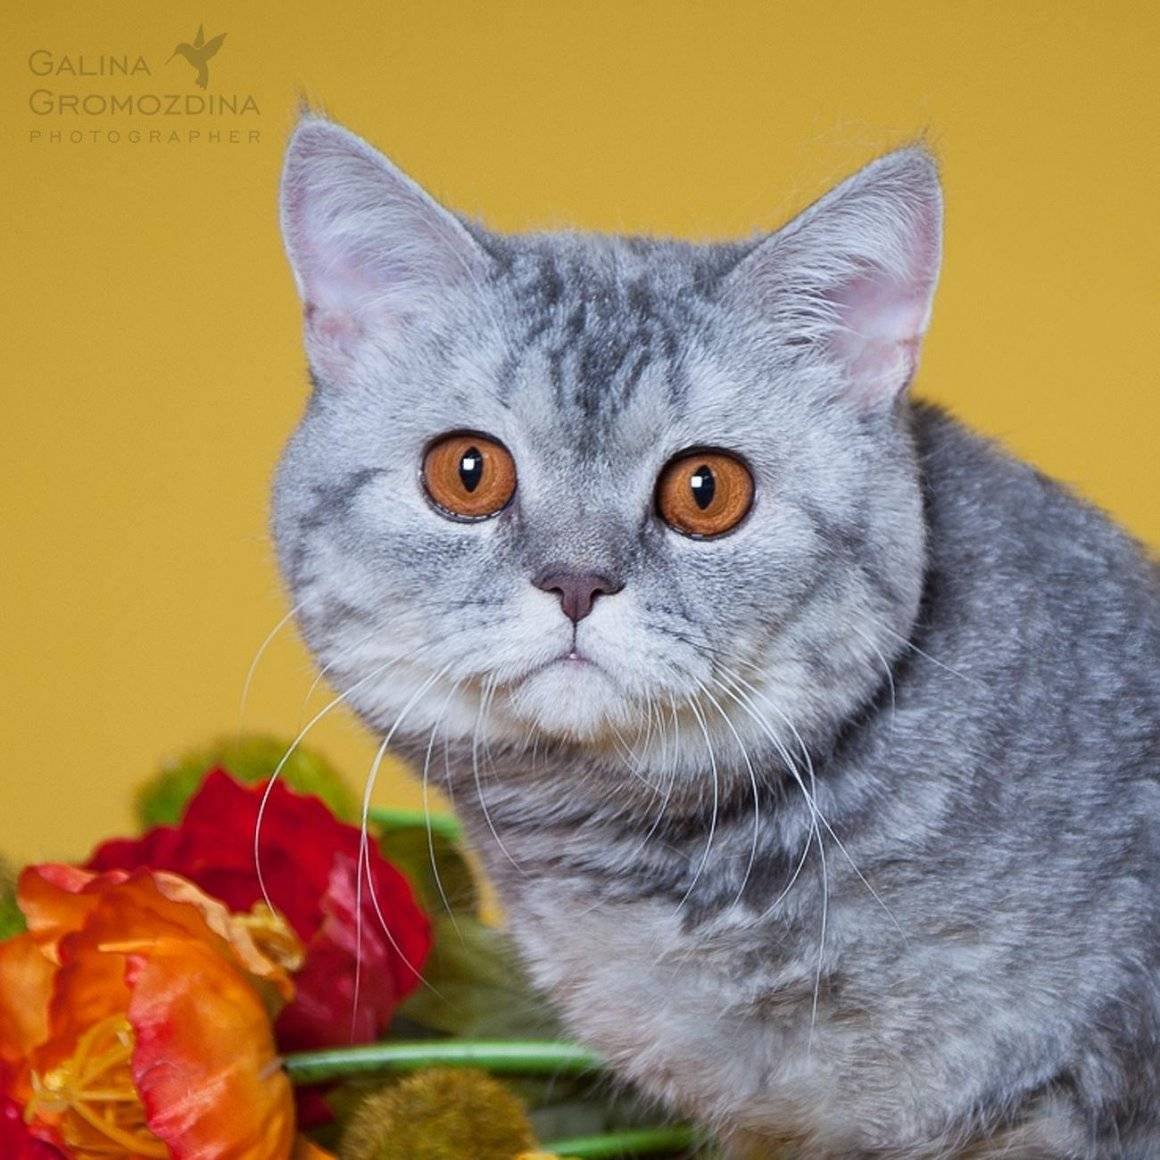 Скоттиш-страйт, или шотландская прямоухая кошка: описание породы, характер животного, фото